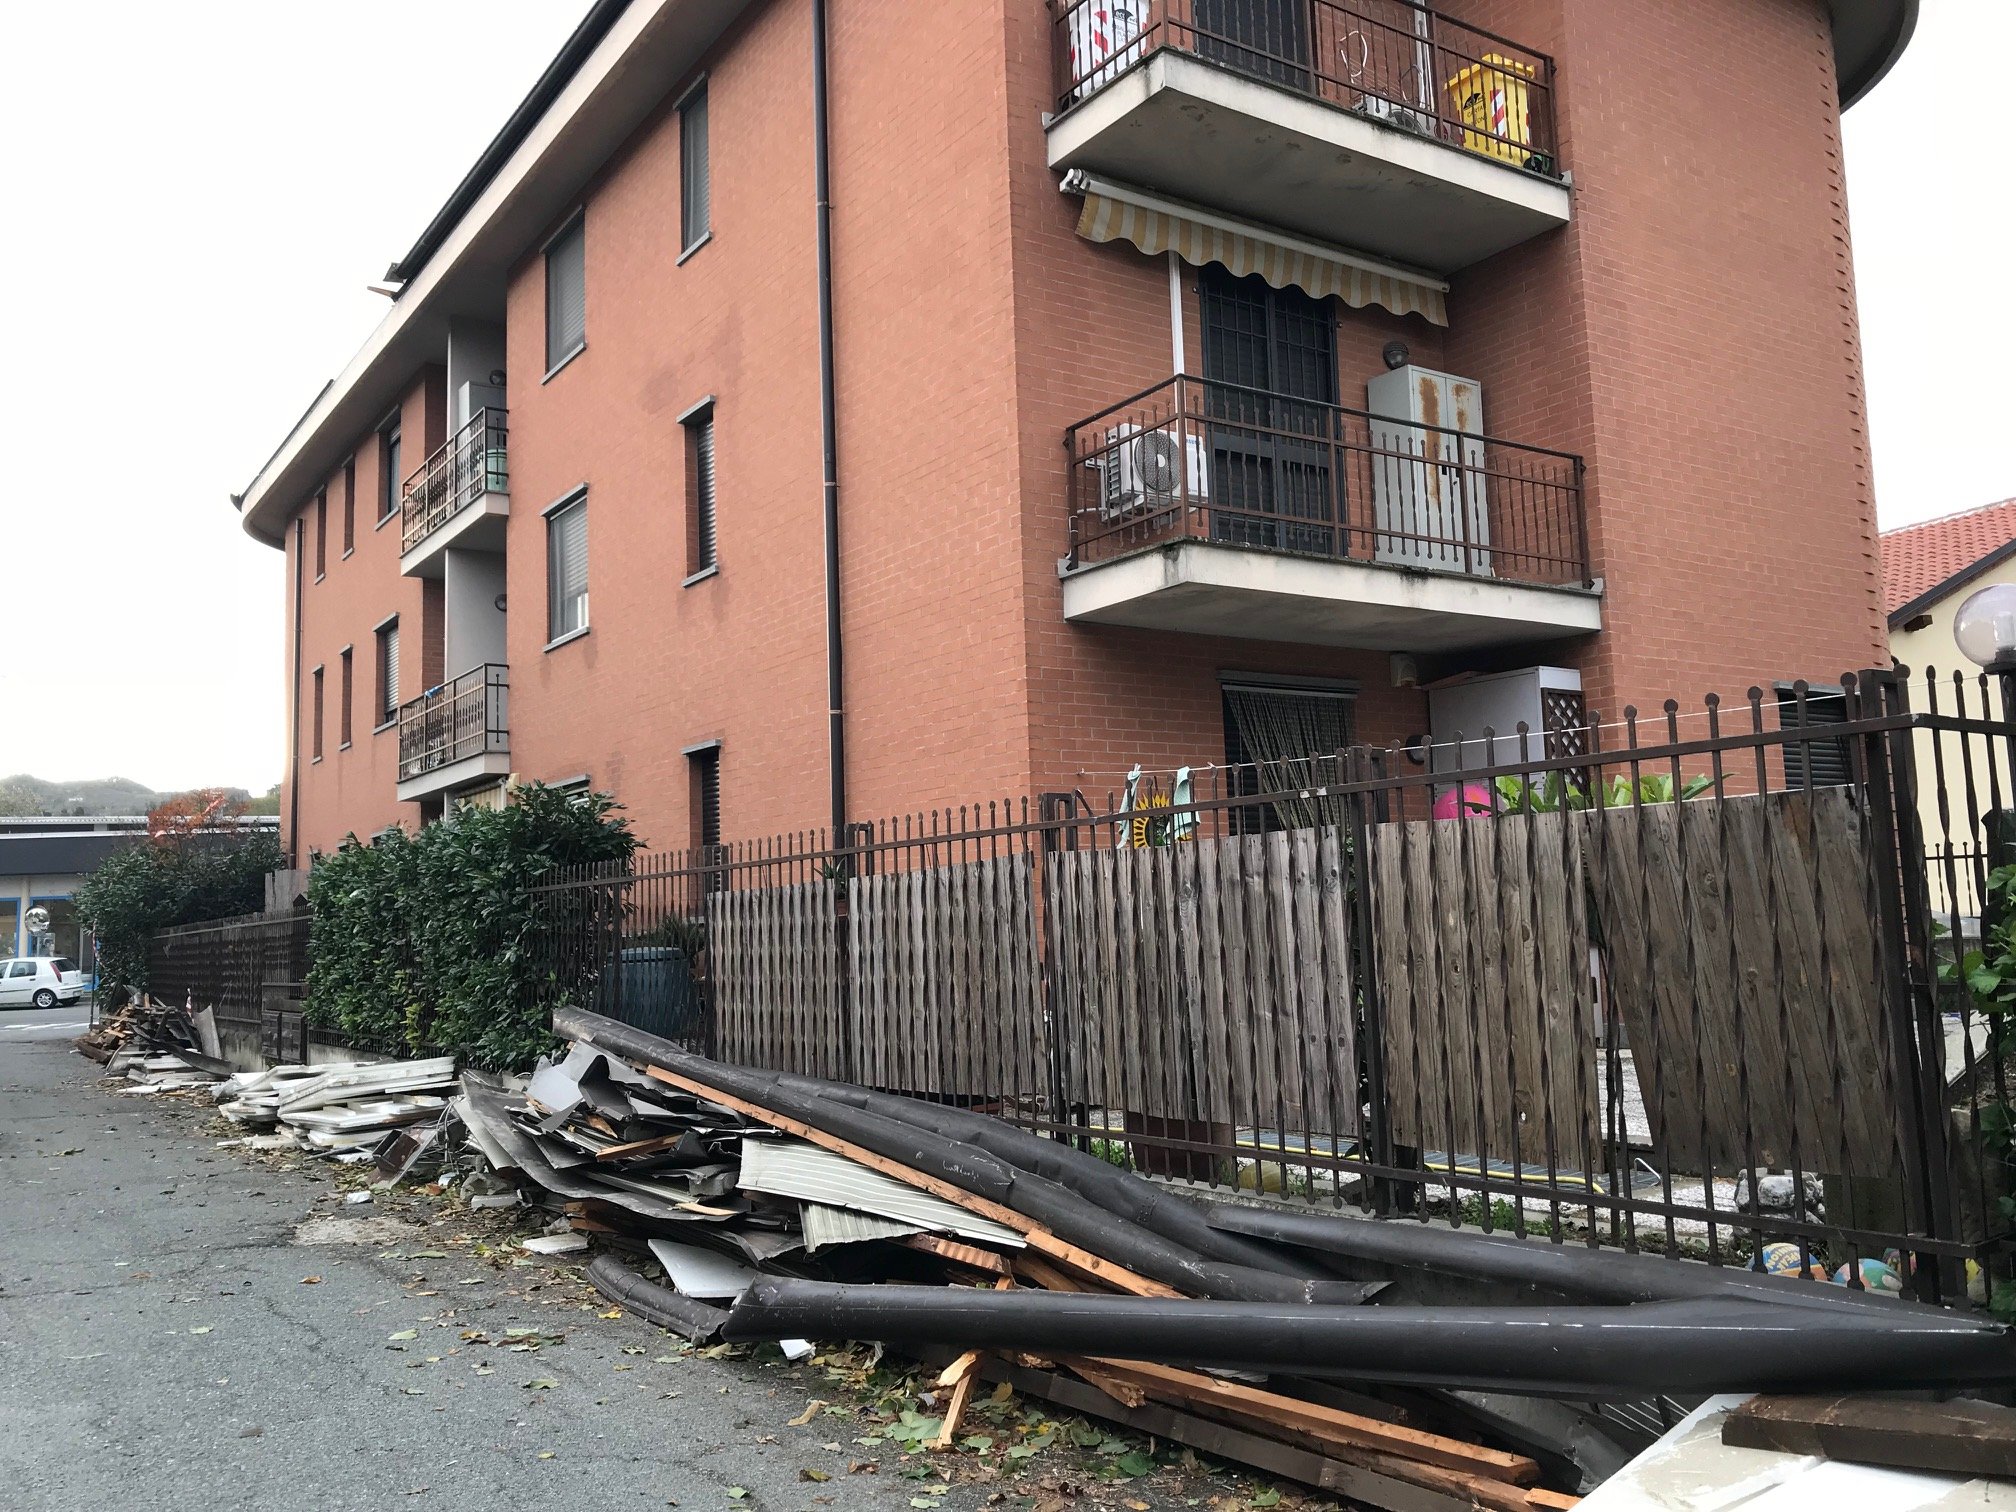 Maltempo: ad Acqui Terme vento a 65Km/h causa crollo di un tetto